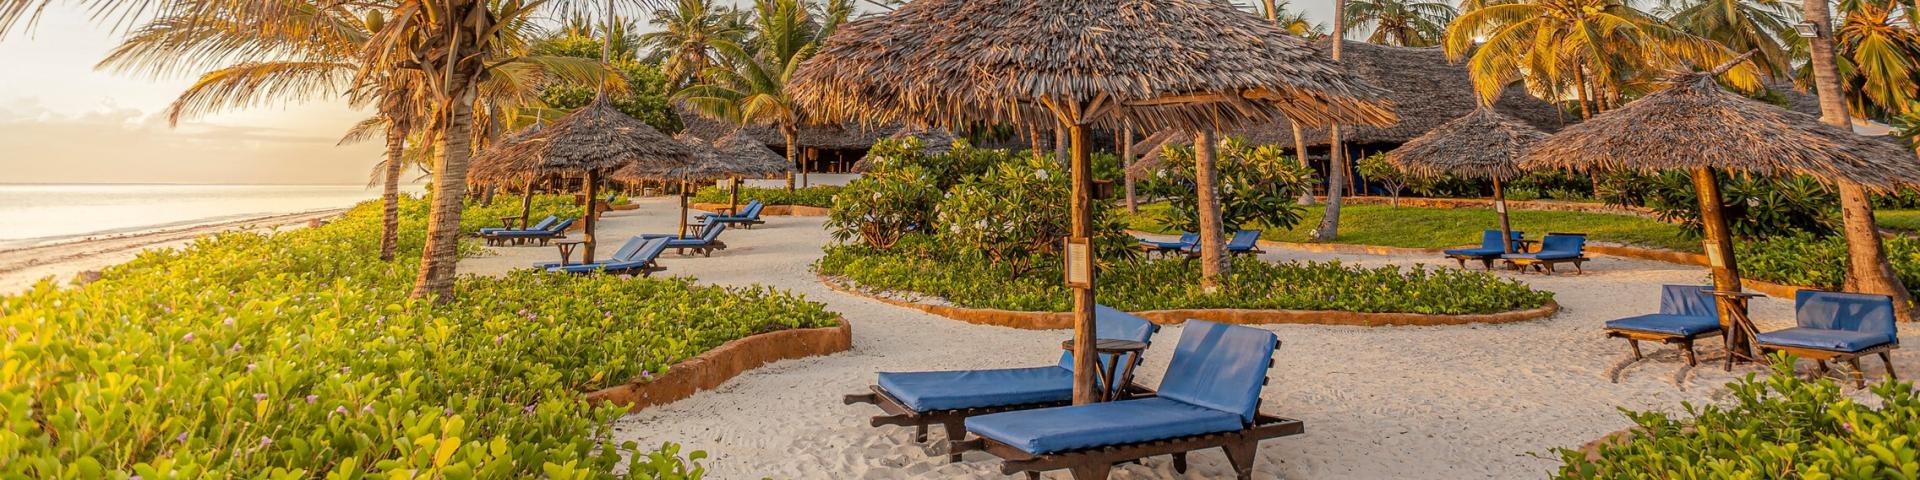 Hotel Breezes Beach Club & Spa - luksusowe wakacje na Zanzibarze